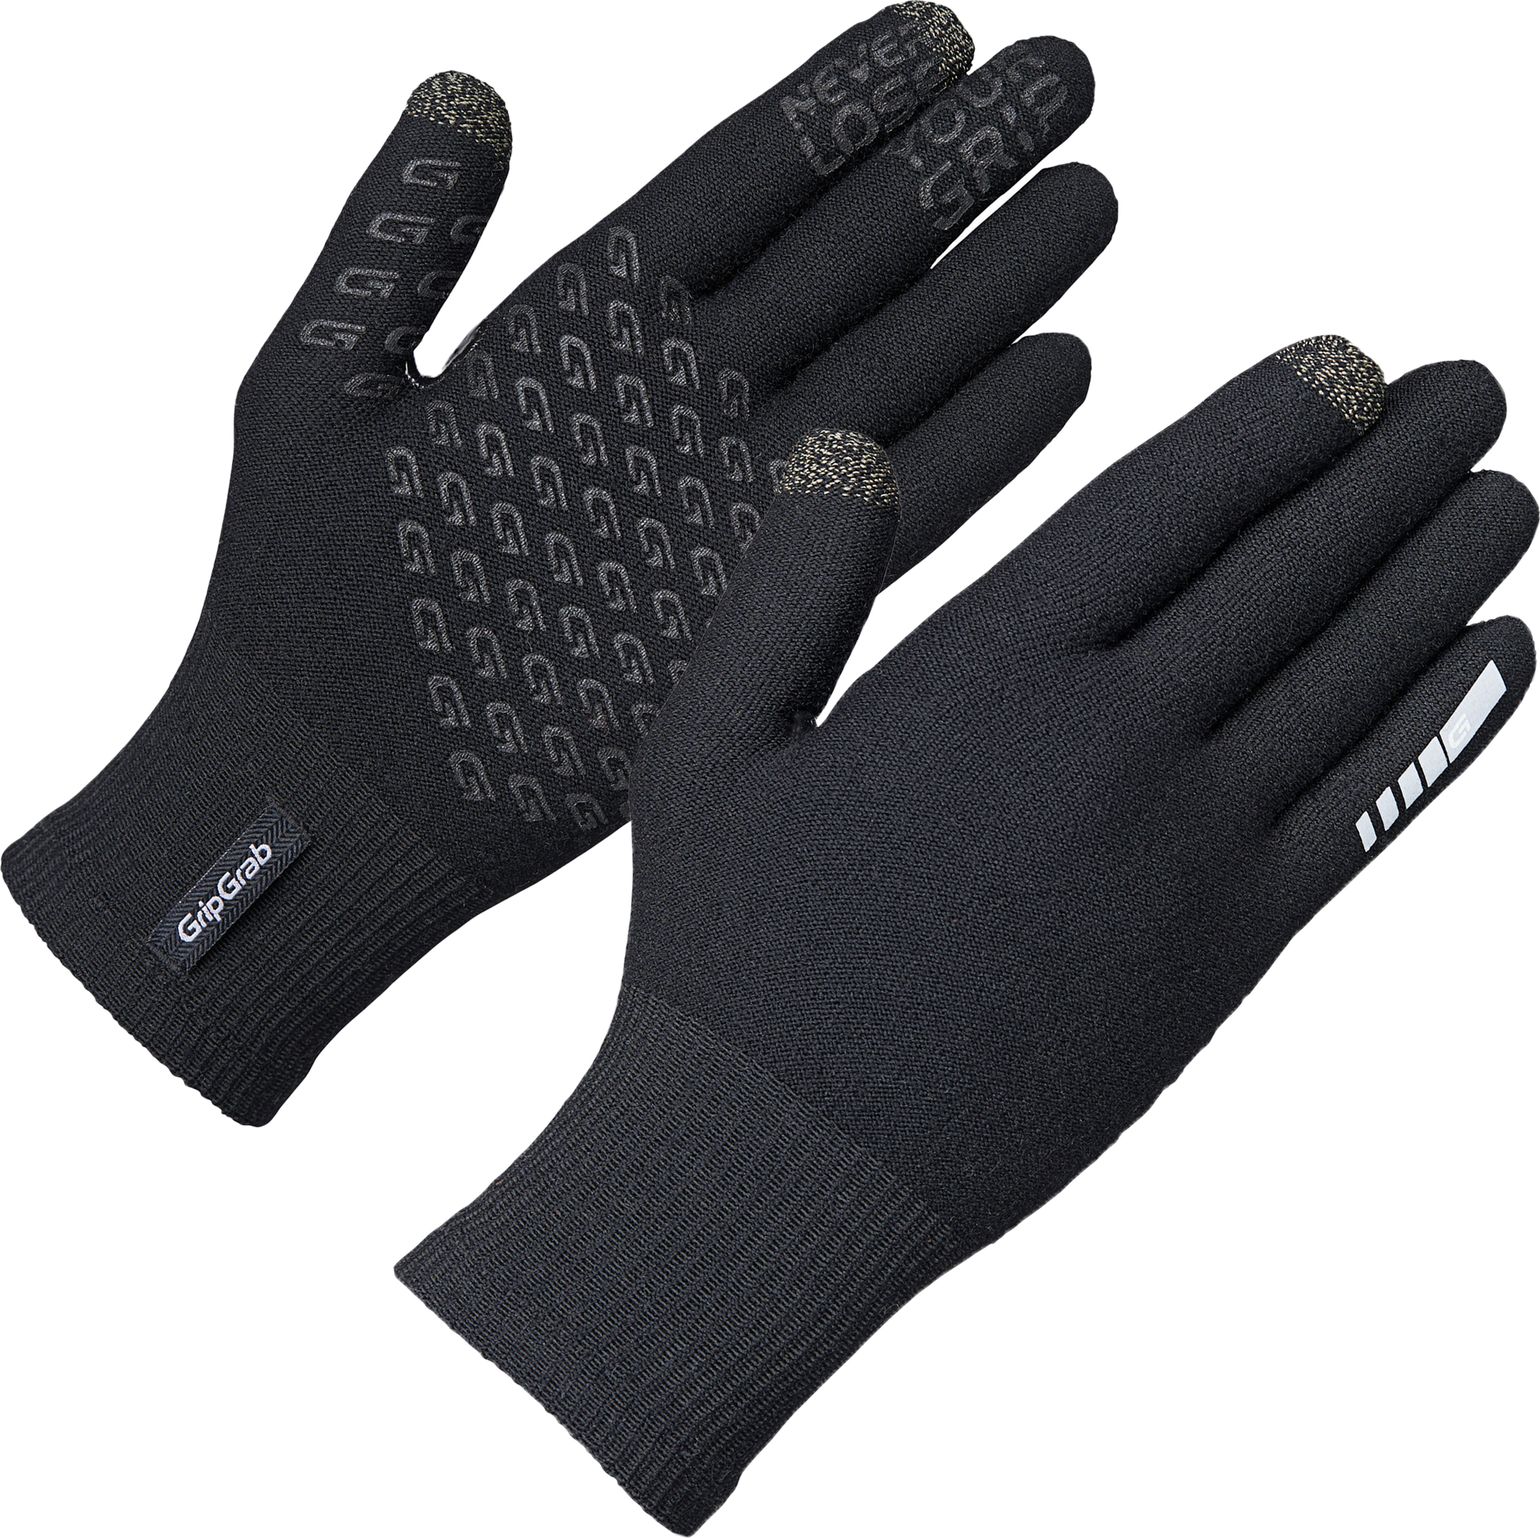 Primavera Merino Midseason Glove II Black